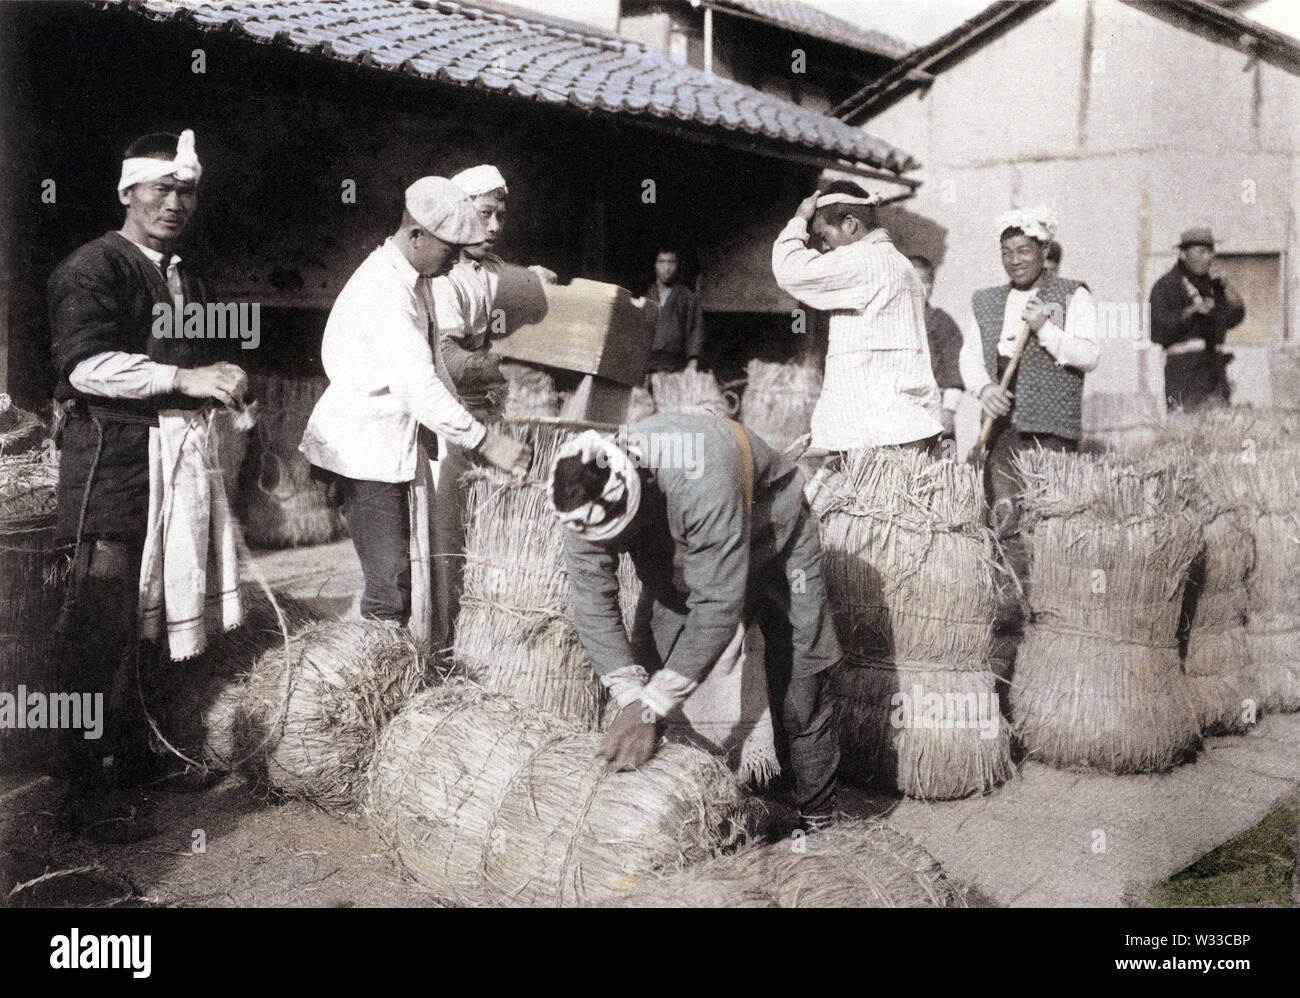 [1900s Japan - Japanische Arbeiter packen Reis] - Anbau von Reis in Japan: Verpackung Reis. Dieses Bild kommt von "den Reis in Japan", veröffentlicht im Jahr 1907 (Meiji 40) von Kobe Fotograf Teijiro Takagi. 13 von 19 20. Jahrhundert vintage Lichtdruck drucken. Stockfoto